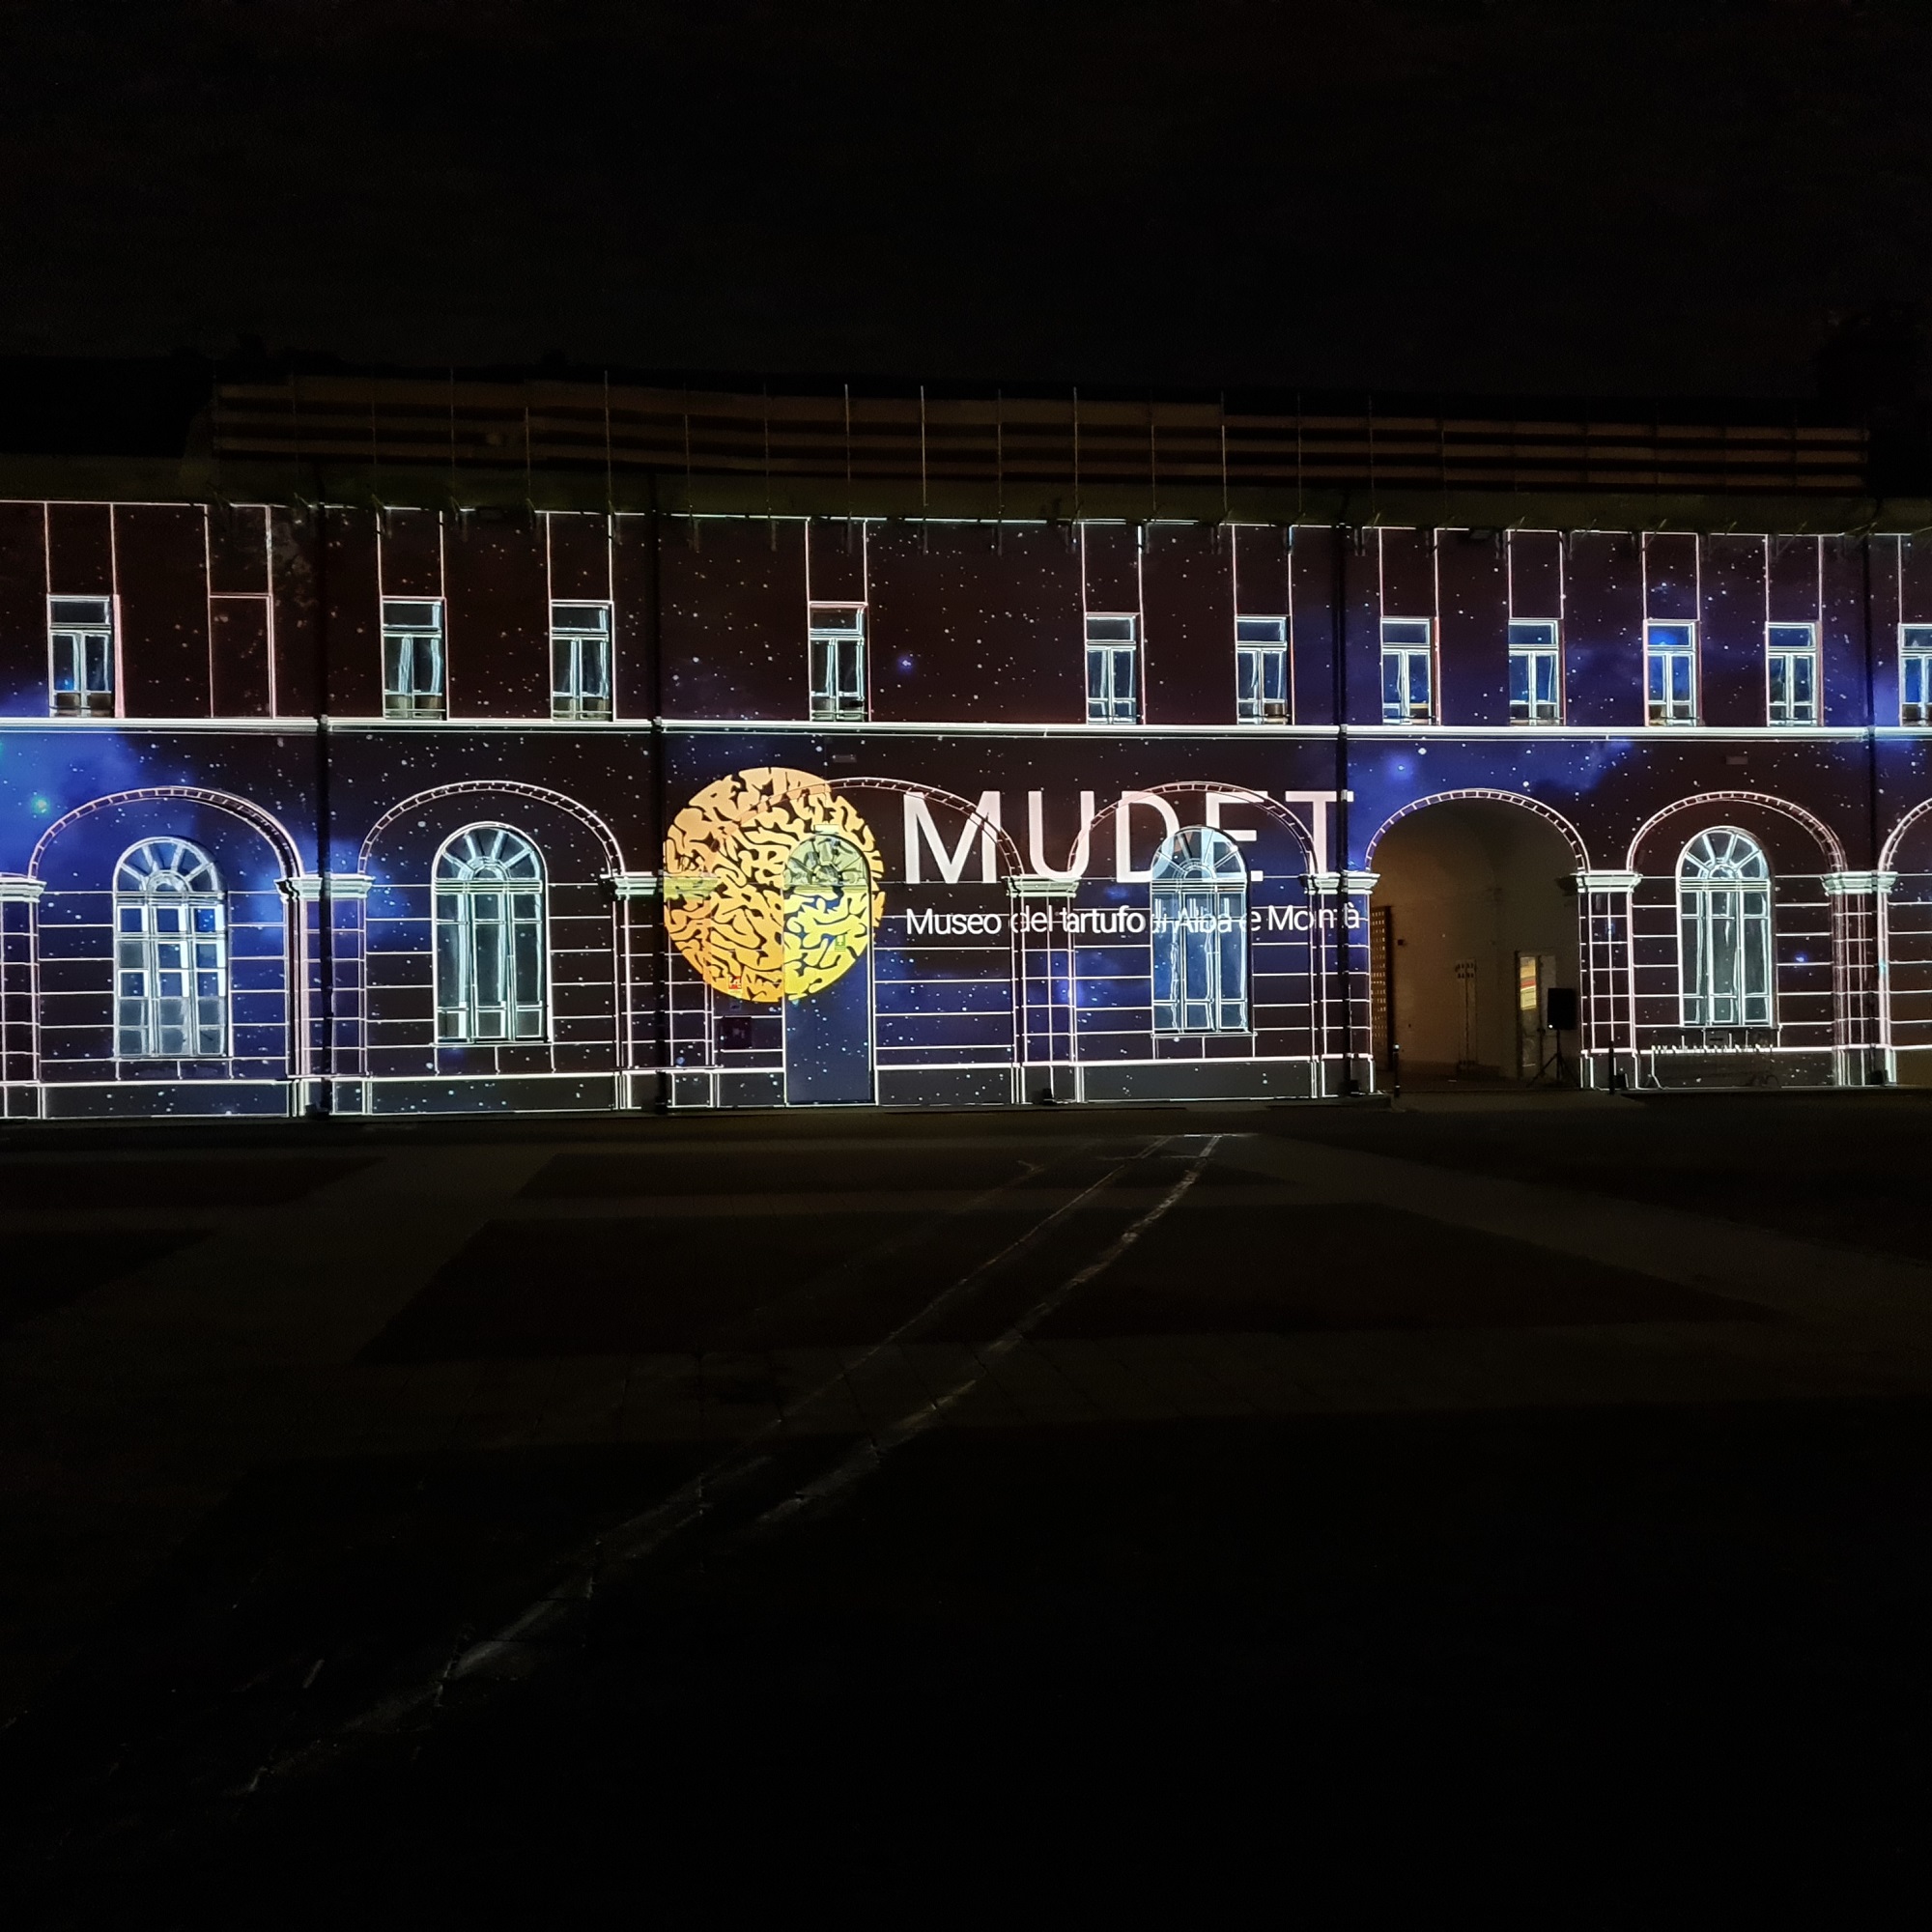 Alba: apre il Mudet, il nuovo Museo del Tartufo - Cerimonia inaugurale aperta alla cittadinanza in Teatro Sociale venerdì 13 ottobre alle ore 17.30